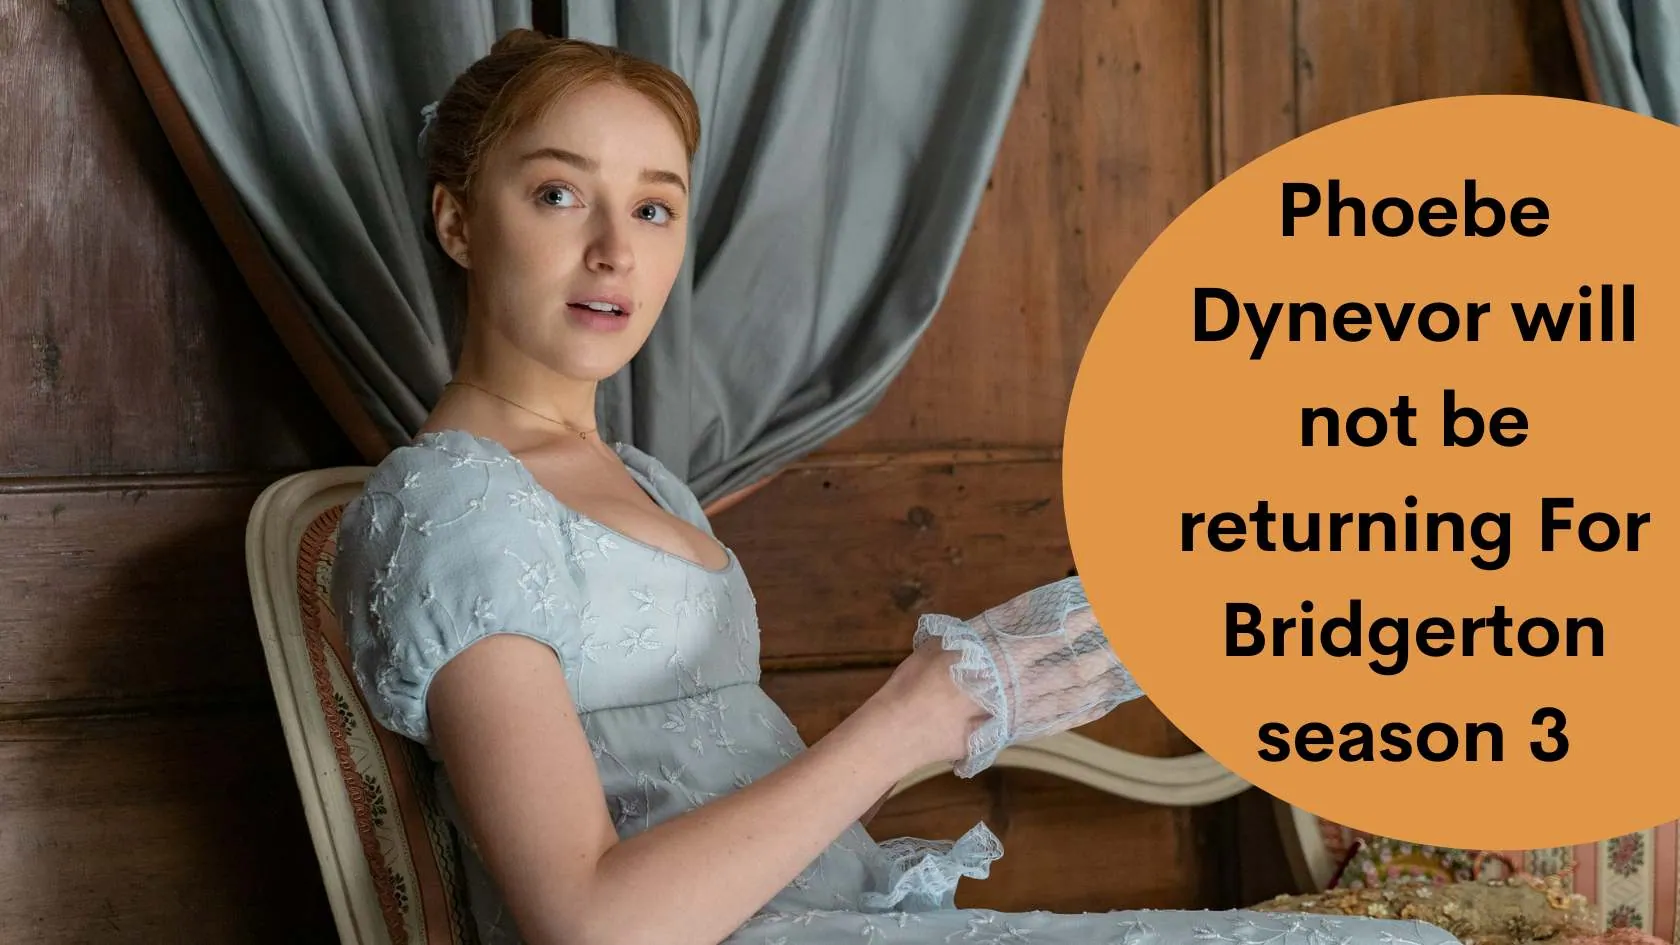 Phoebe Dynevor will not be returning For Bridgerton season 3